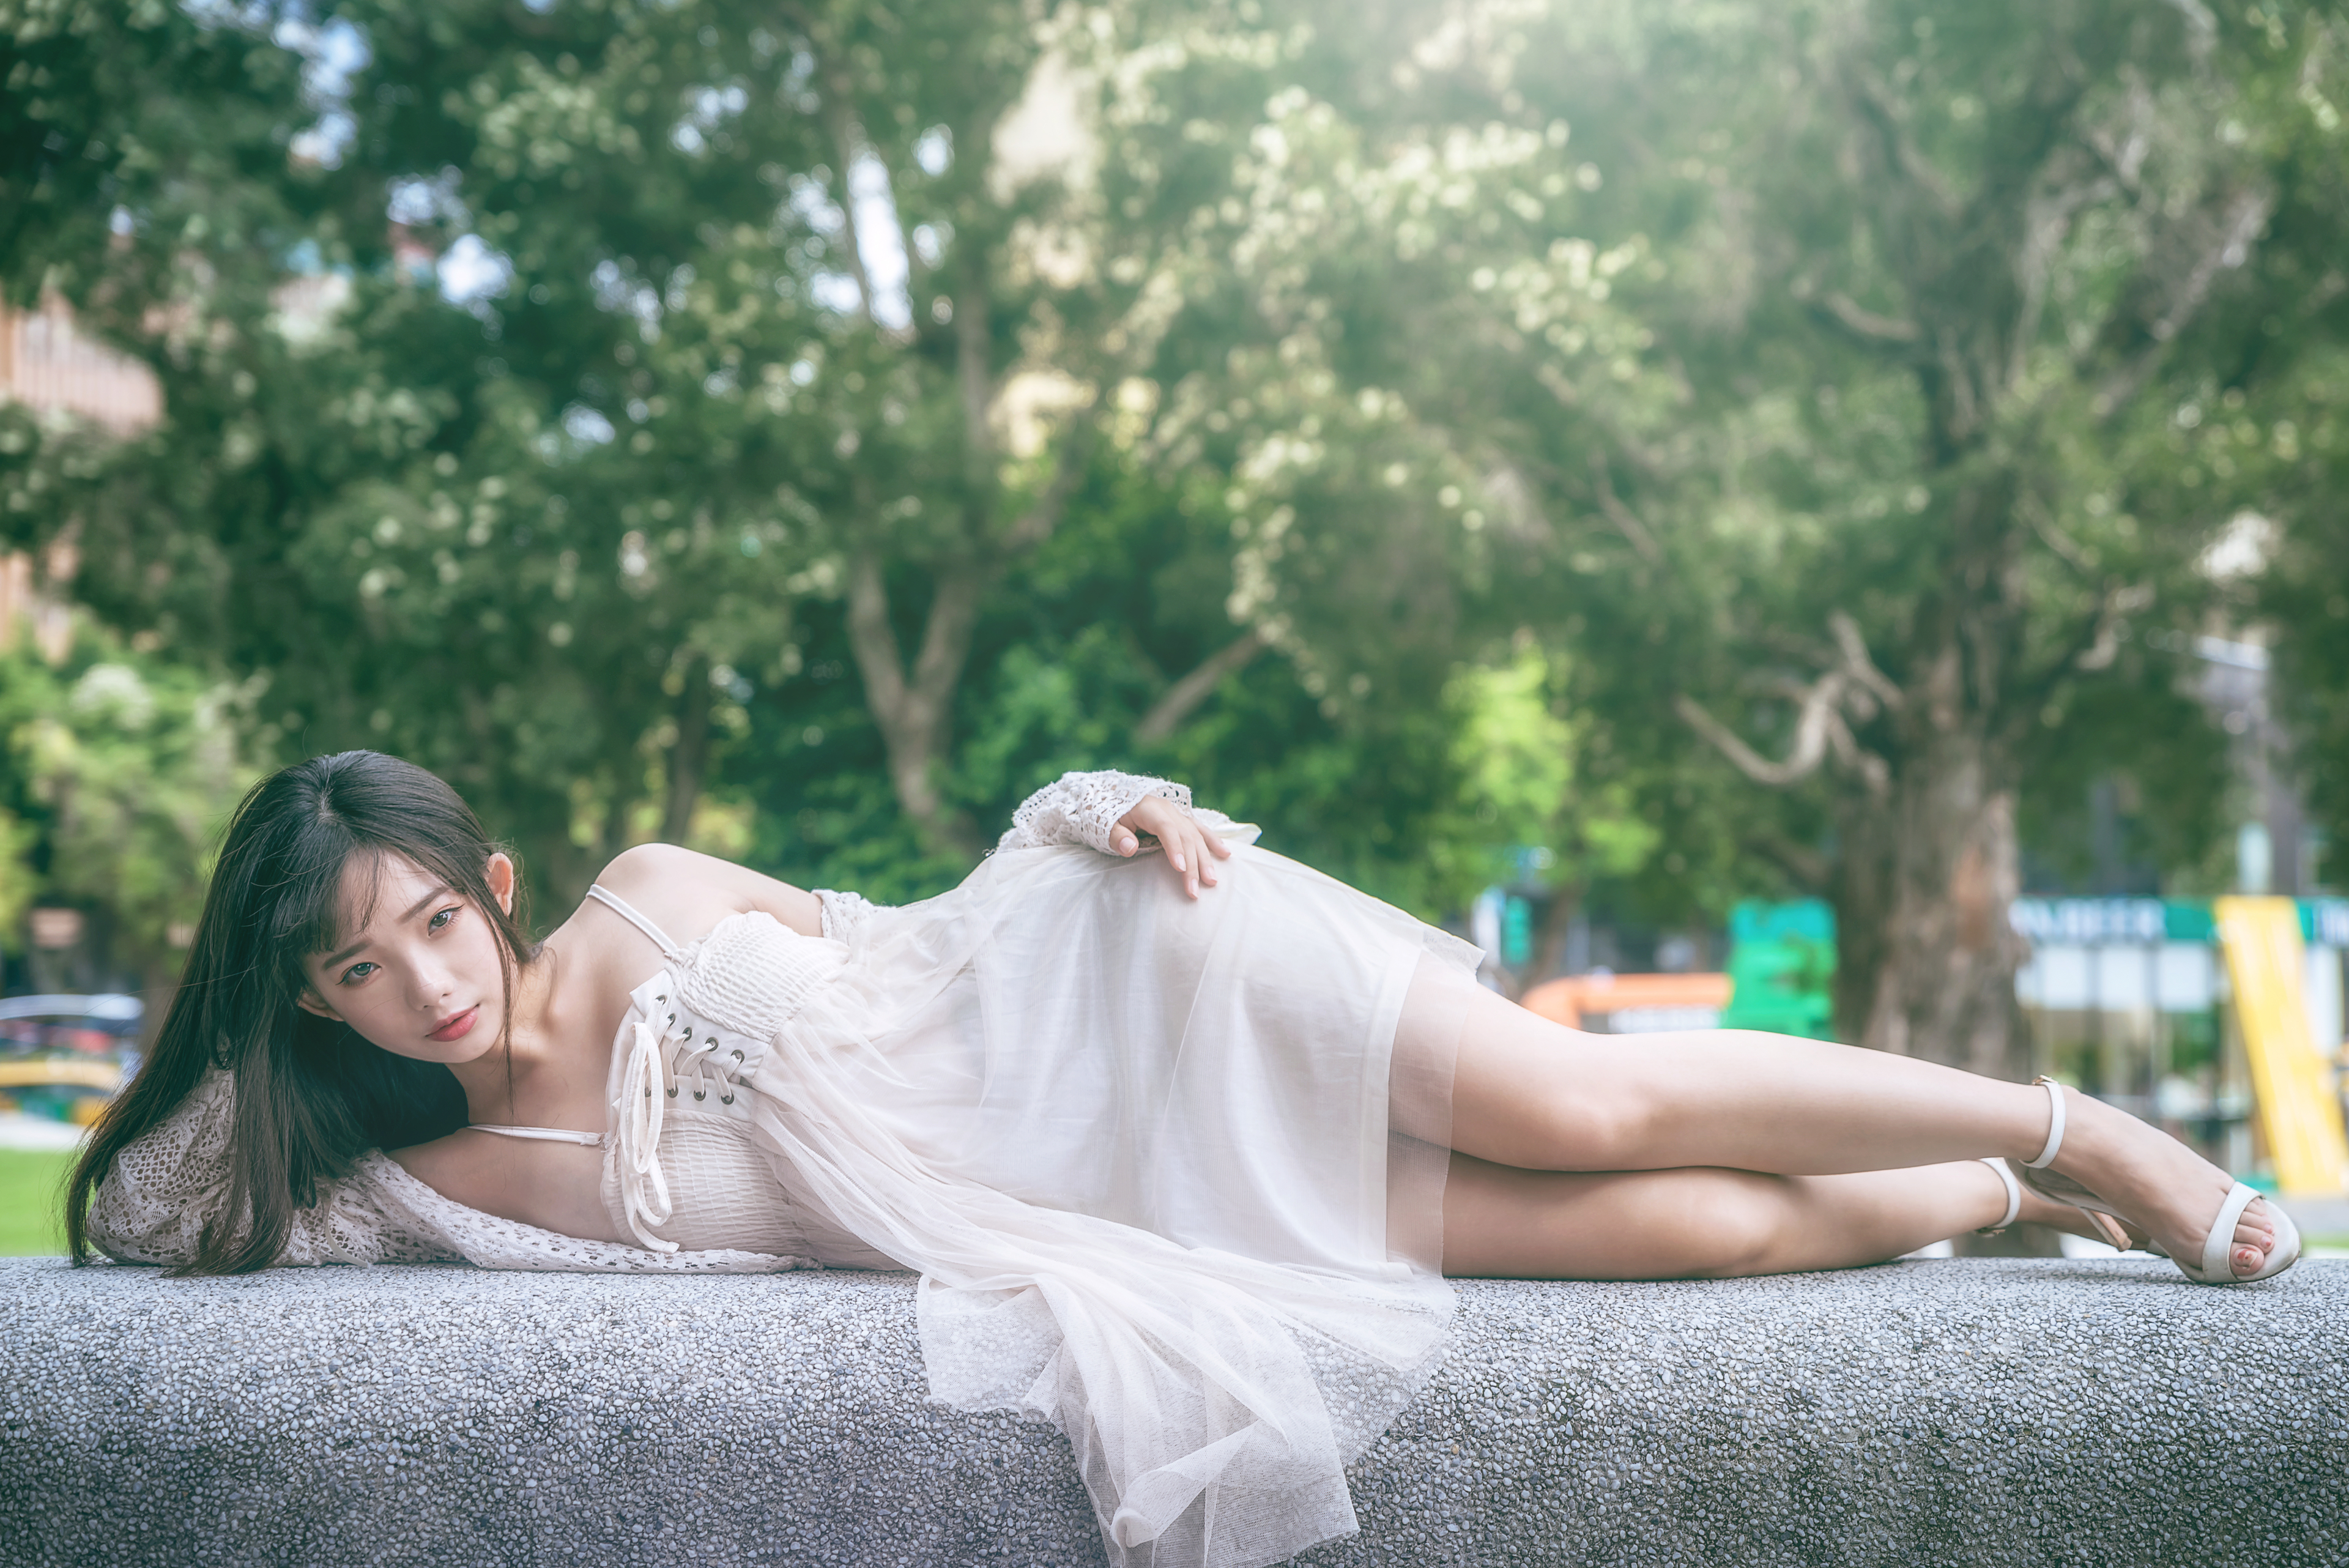 Ning Shioulin Women Model Asian Brunette Dress Lying On Side Sweater Women Outdoors Heels 3840x2563